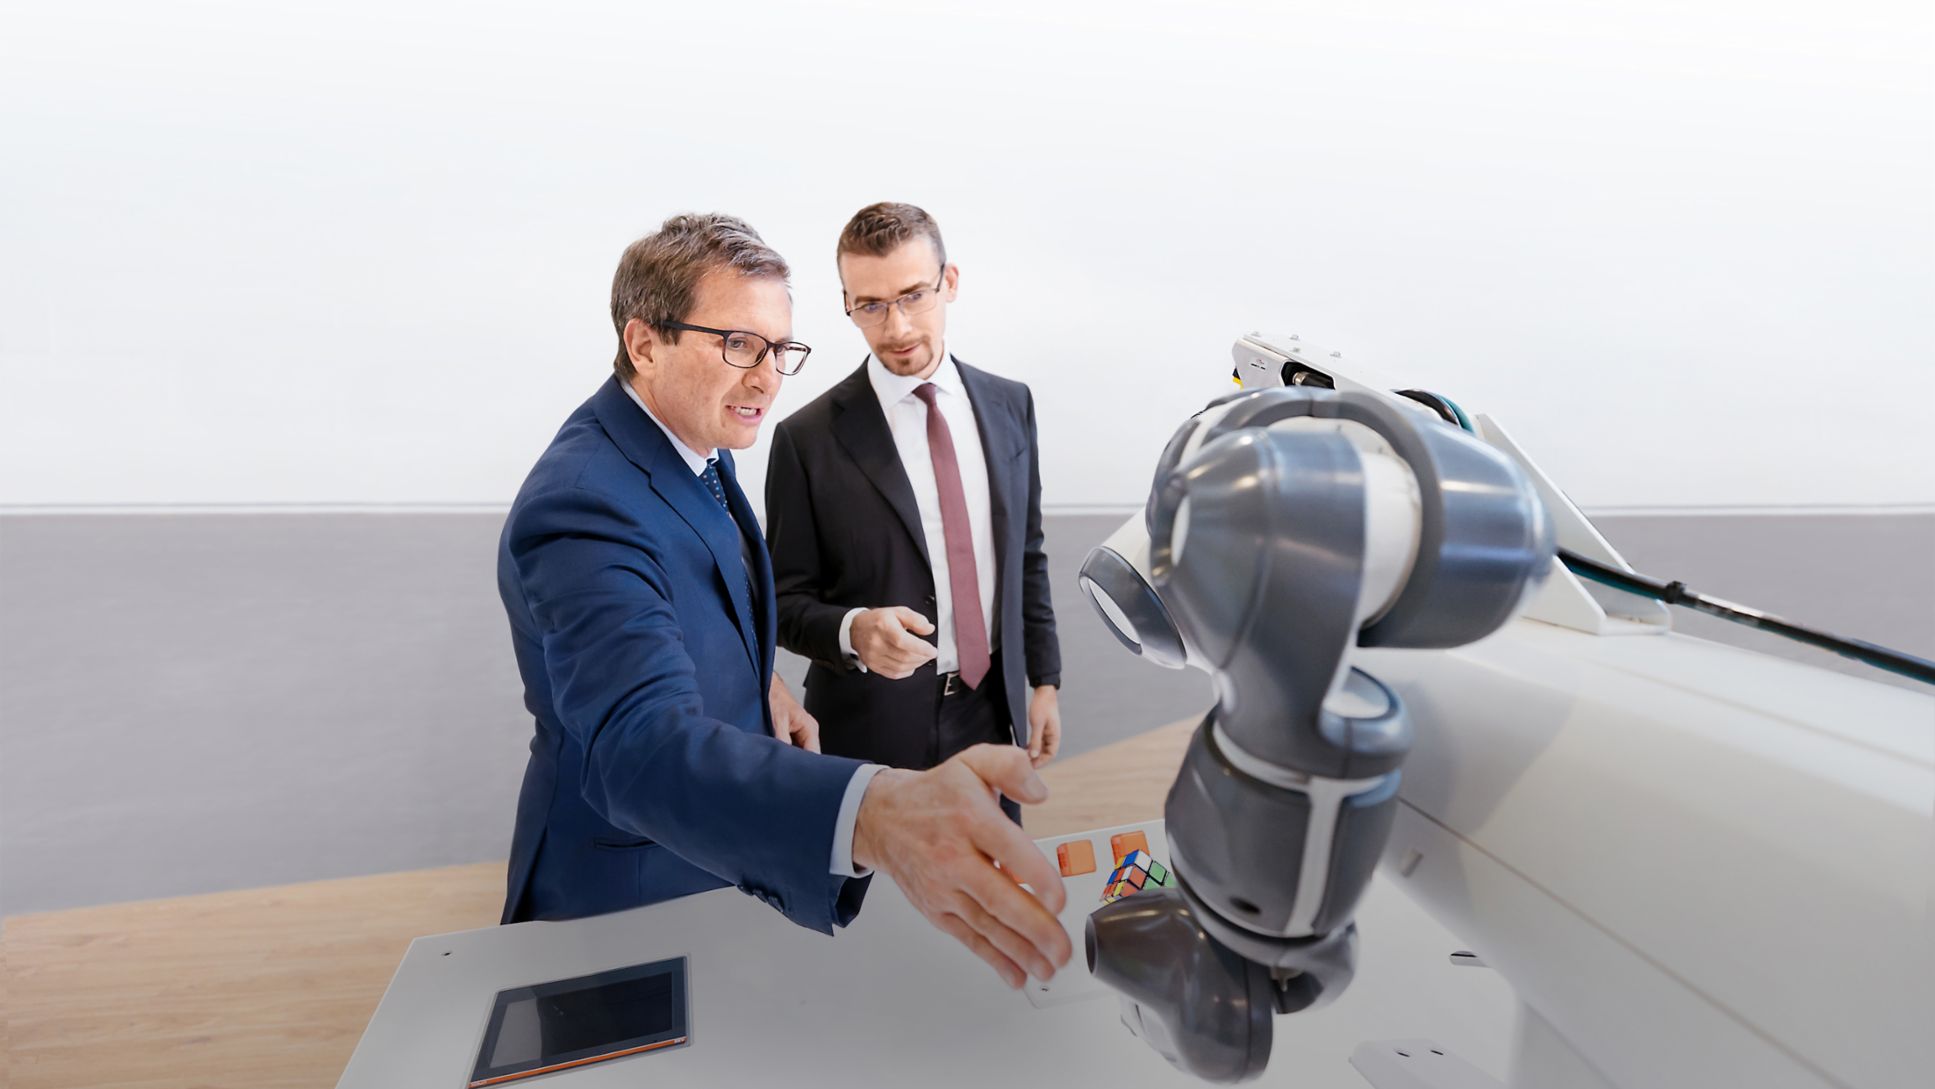 Leonardo Leani, Division Manager Robotics & Descrete Automation at ABB (left) with Claudio Brusatori, Partner at Porsche Consulting Italia, 2022, Porsche Consulting